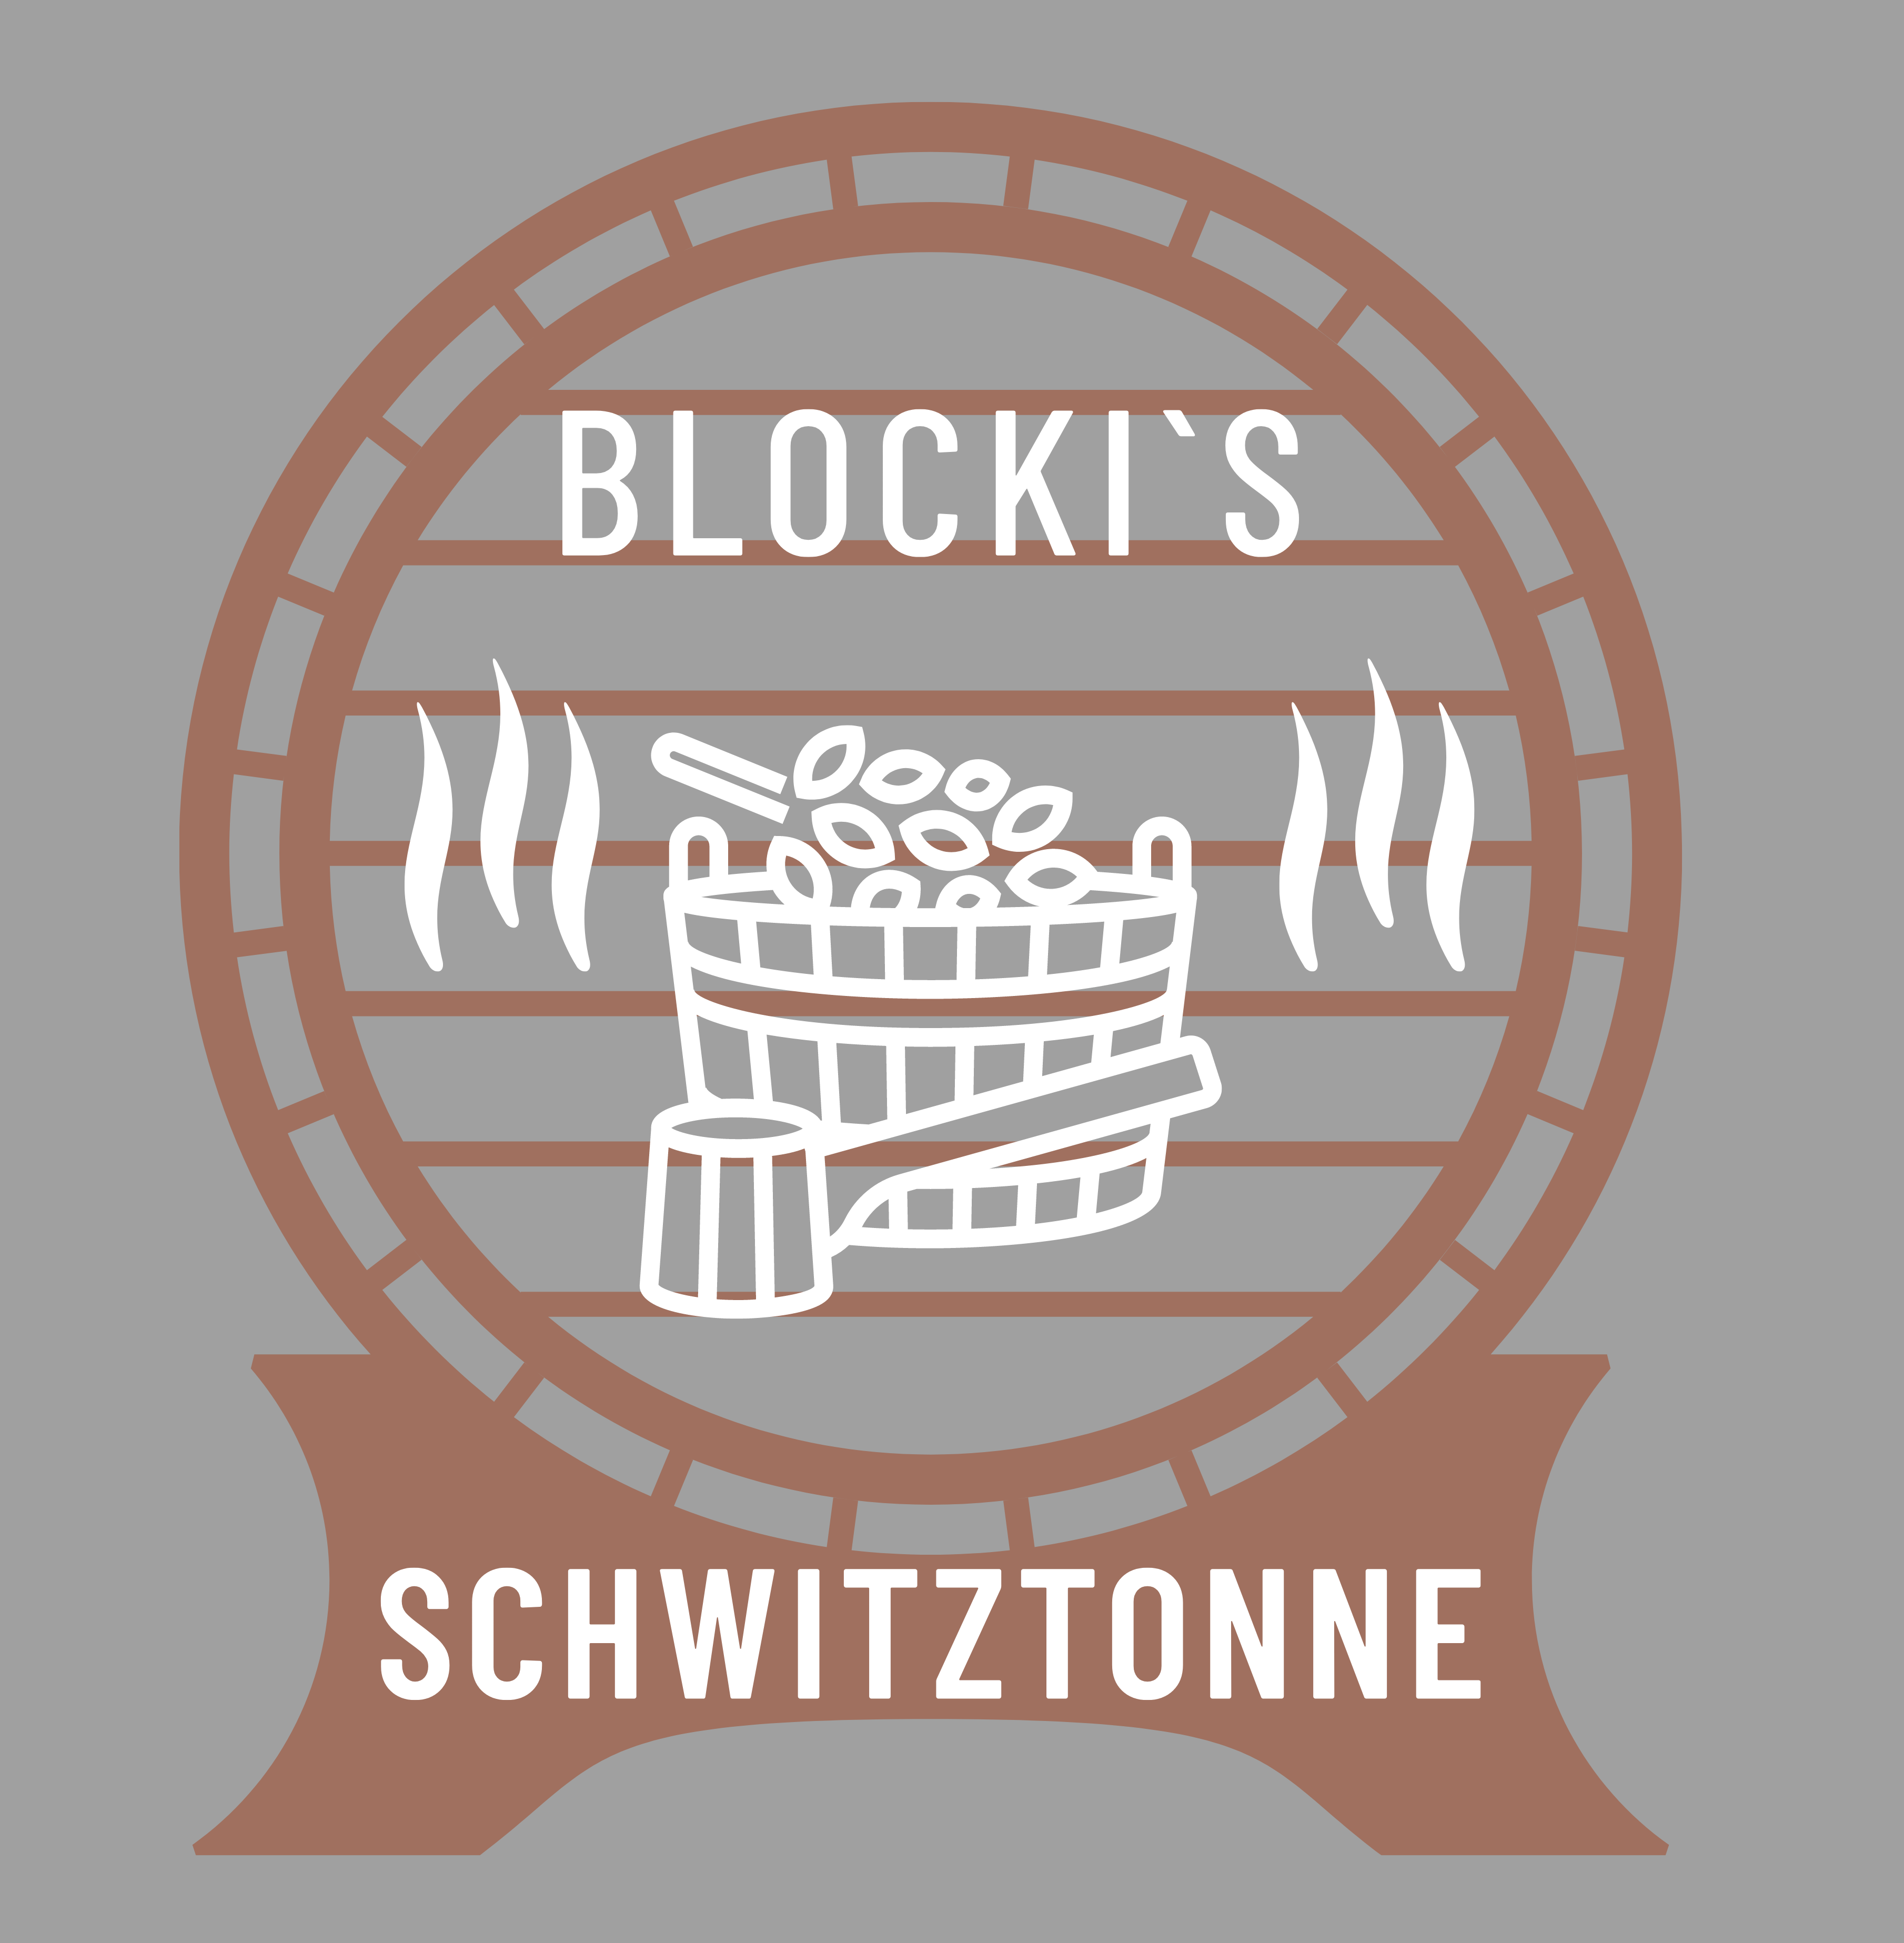 Blocki's Schwitztonne